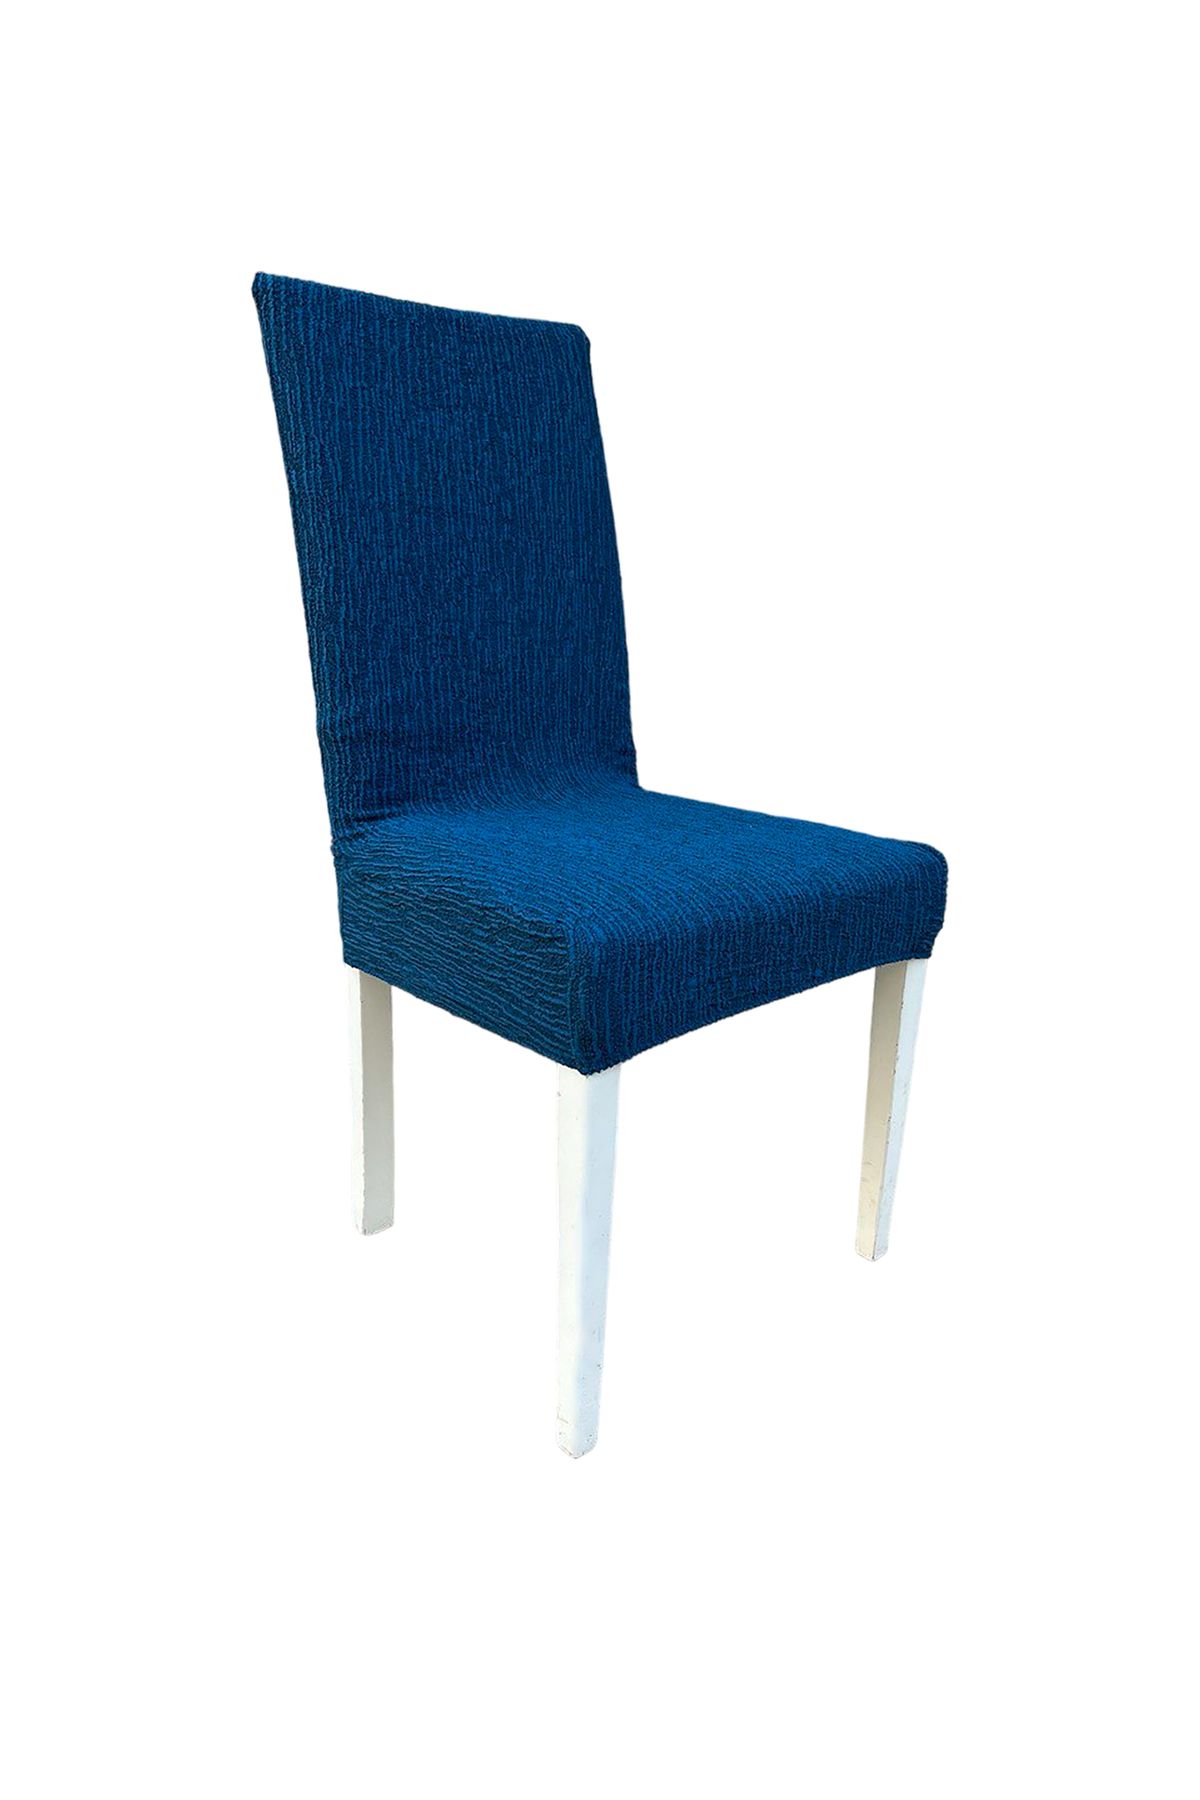 GüzelEvim Tekstil Jakarlı Düz Desen Sandalye kılıfı Yüksek Esnekli Sandalye örtüsü (1 adet)